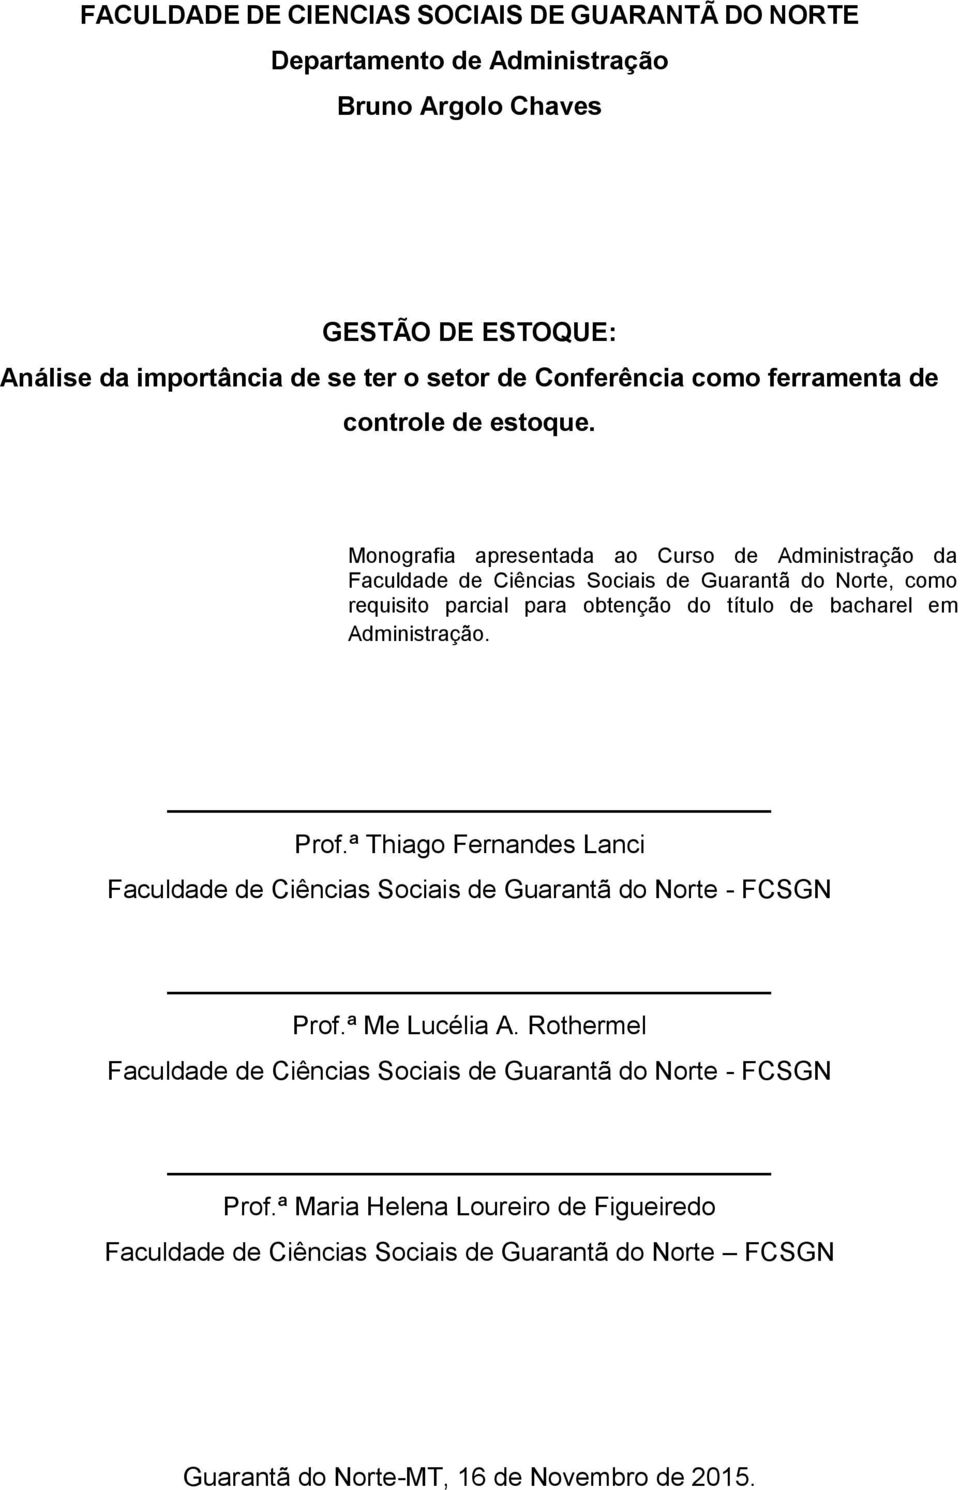 Monografia apresentada ao Curso de Administração da Faculdade de Ciências Sociais de Guarantã do Norte, como requisito parcial para obtenção do título de bacharel em Administração.